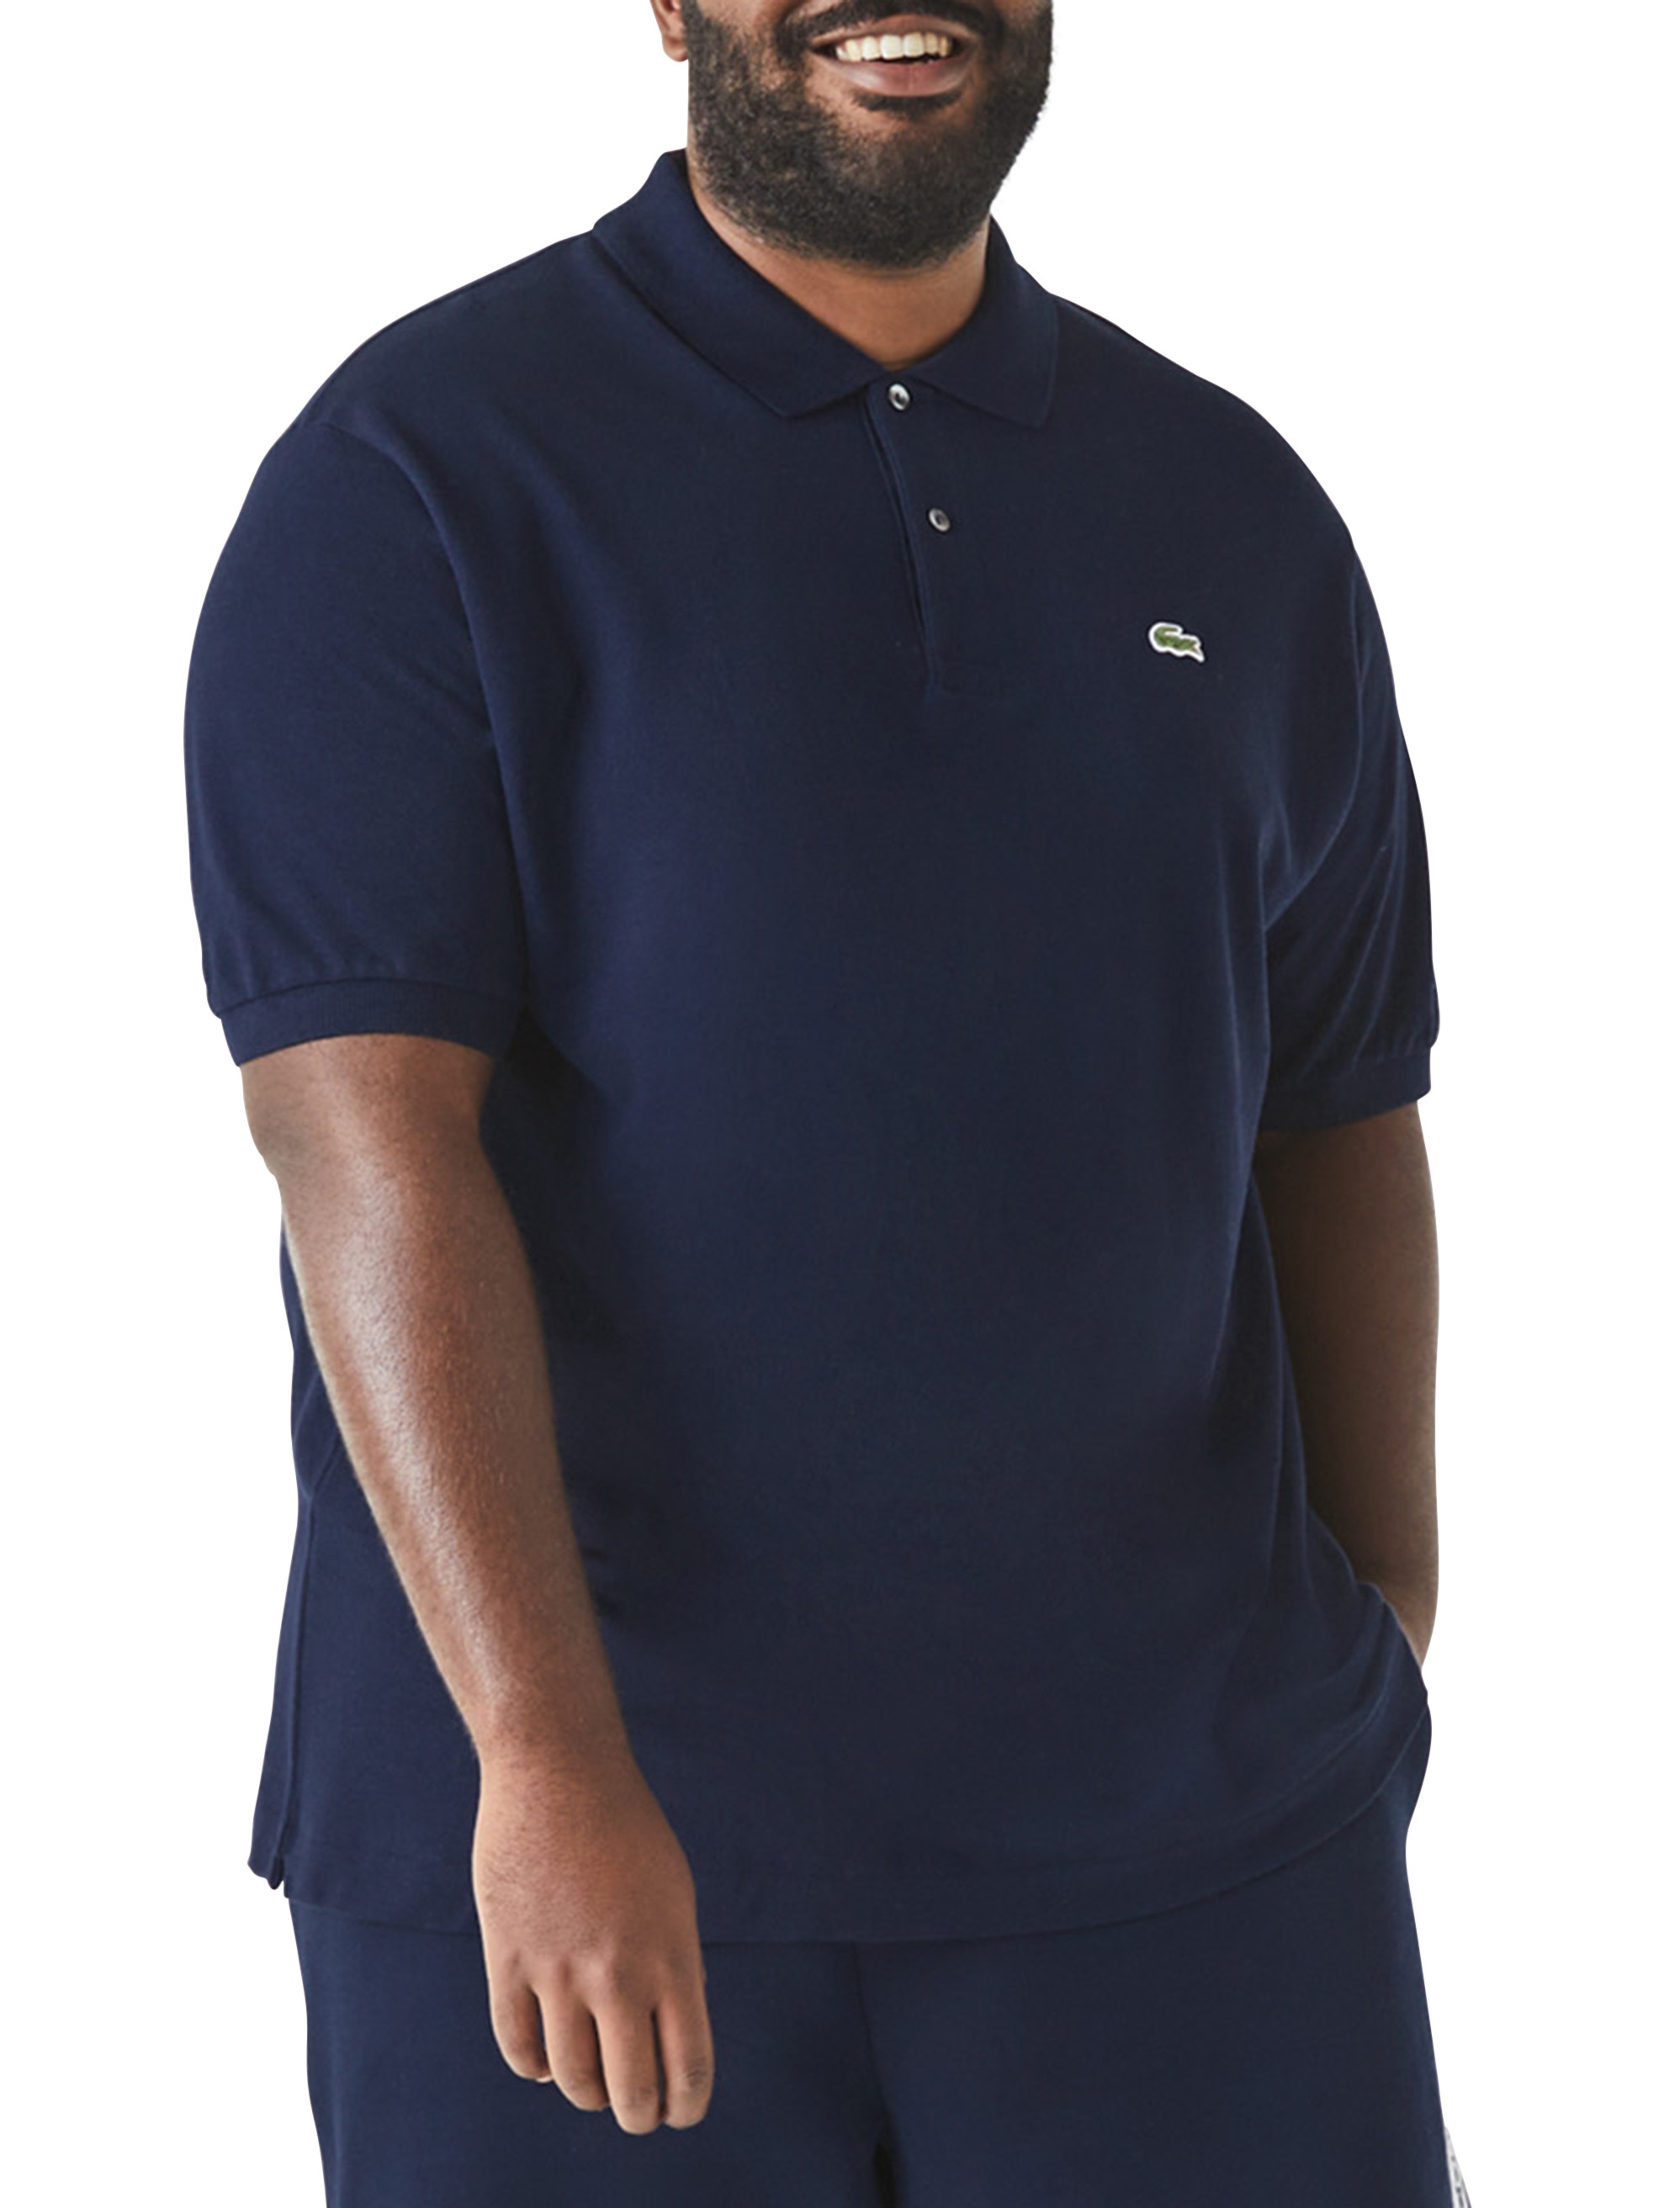 Lacoste Custom Apparel  Company Logo Polos, Tees, Dress Shirts & Hats